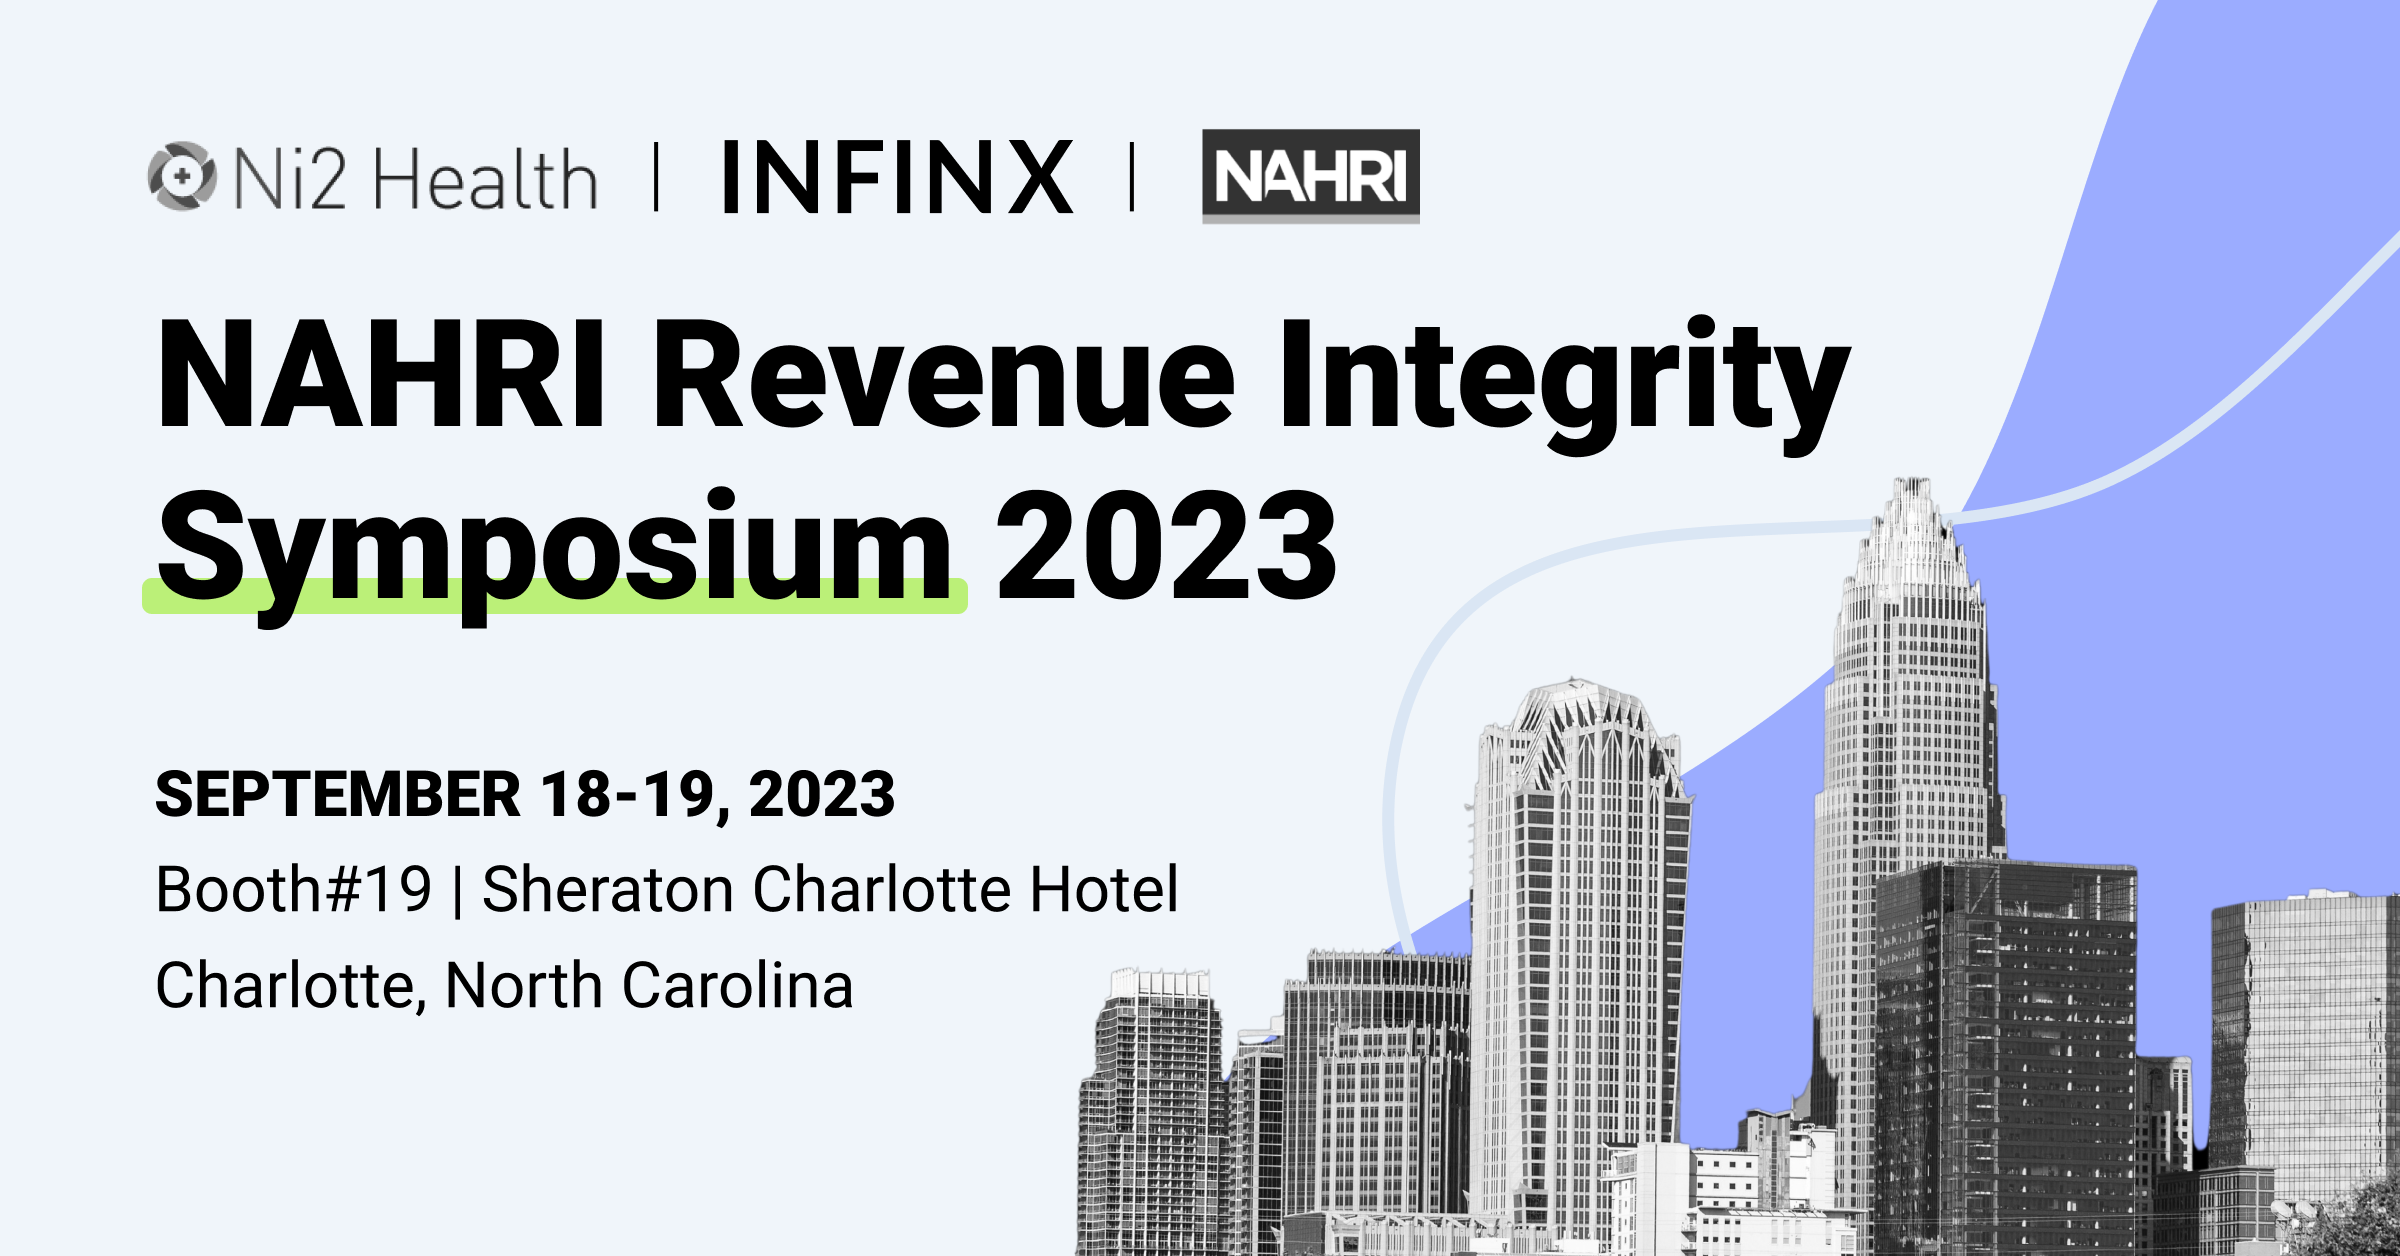 Infinx - Tradeshow Event - NAHRI Revenue Integrity Symposium 2023